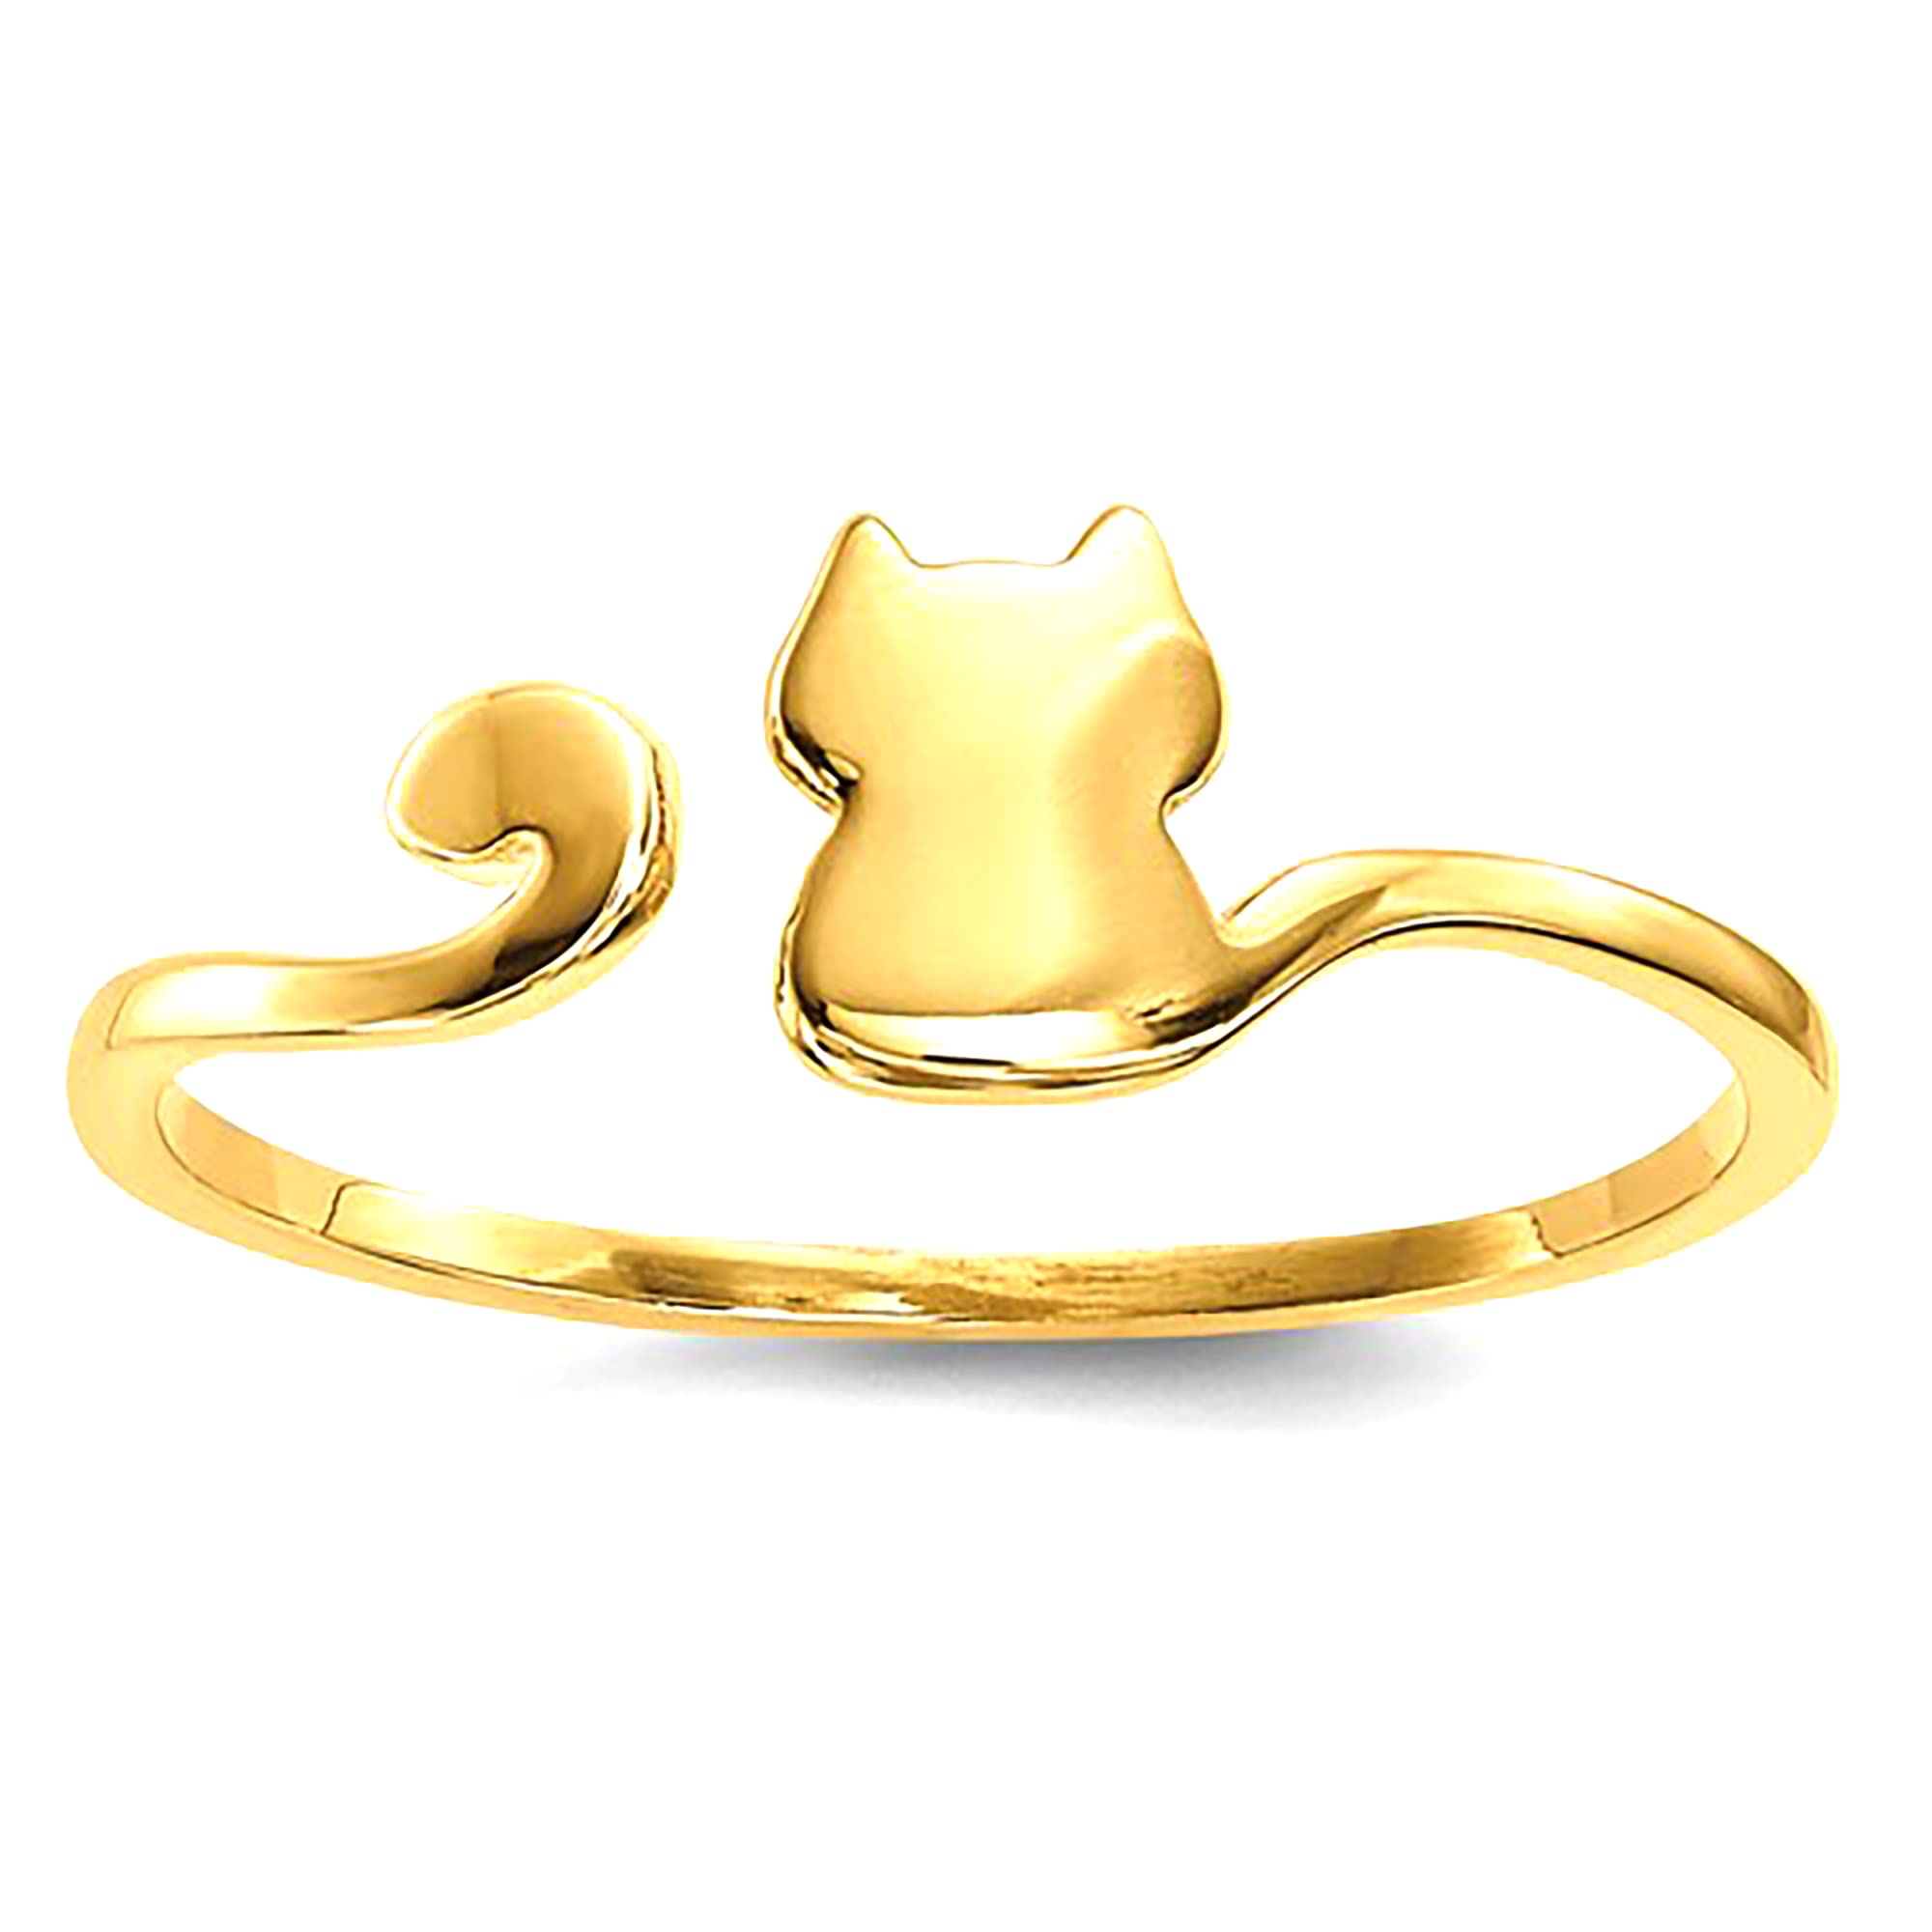 Anillo ajustable con diseño de gato pulido en oro amarillo de 14 quilates, joyería de diseño fino para hombres y mujeres